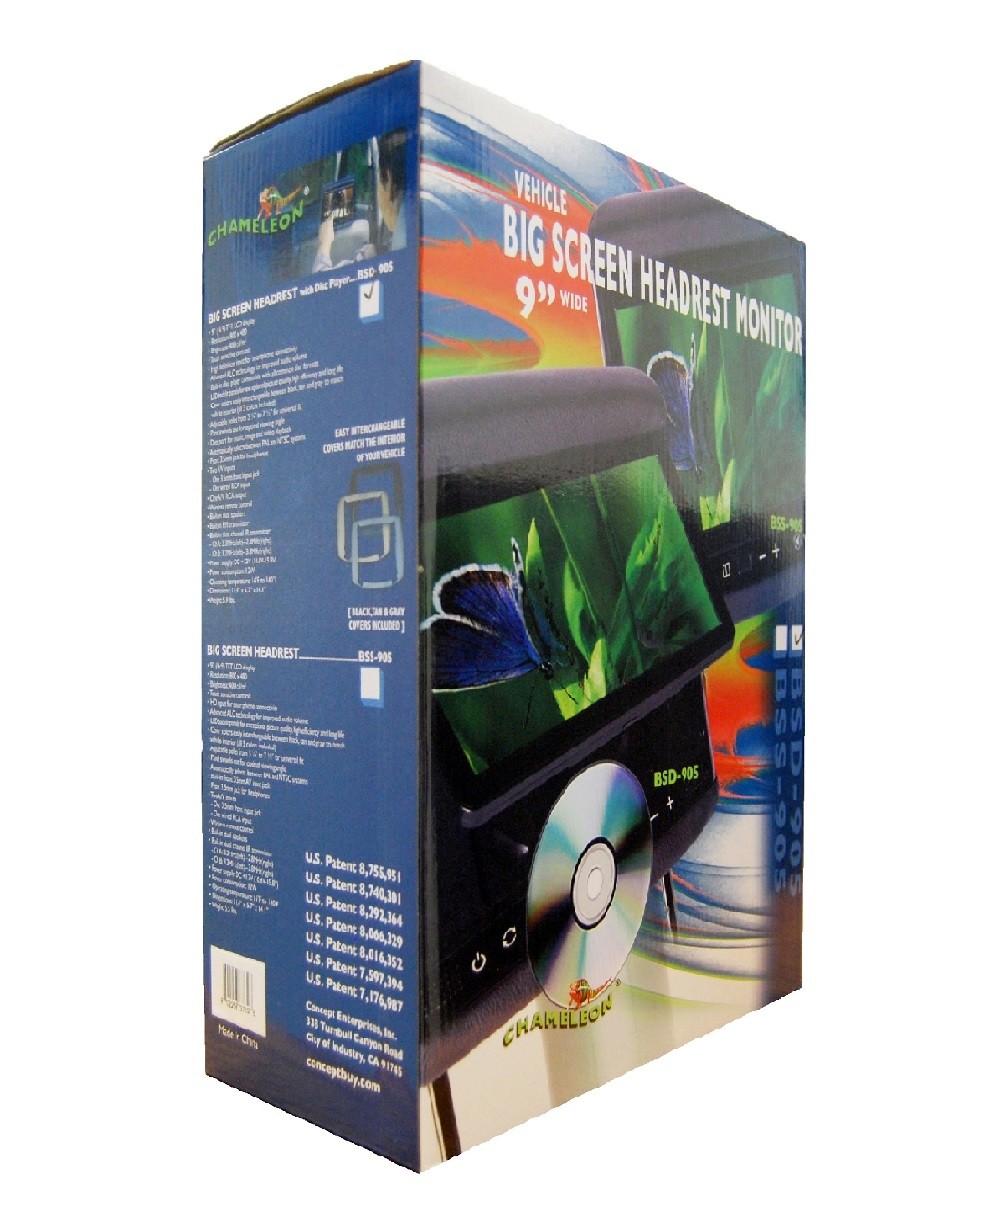 BSD-905 - Chameleon 9" LCD Headrest w/ Build-in DVD Player